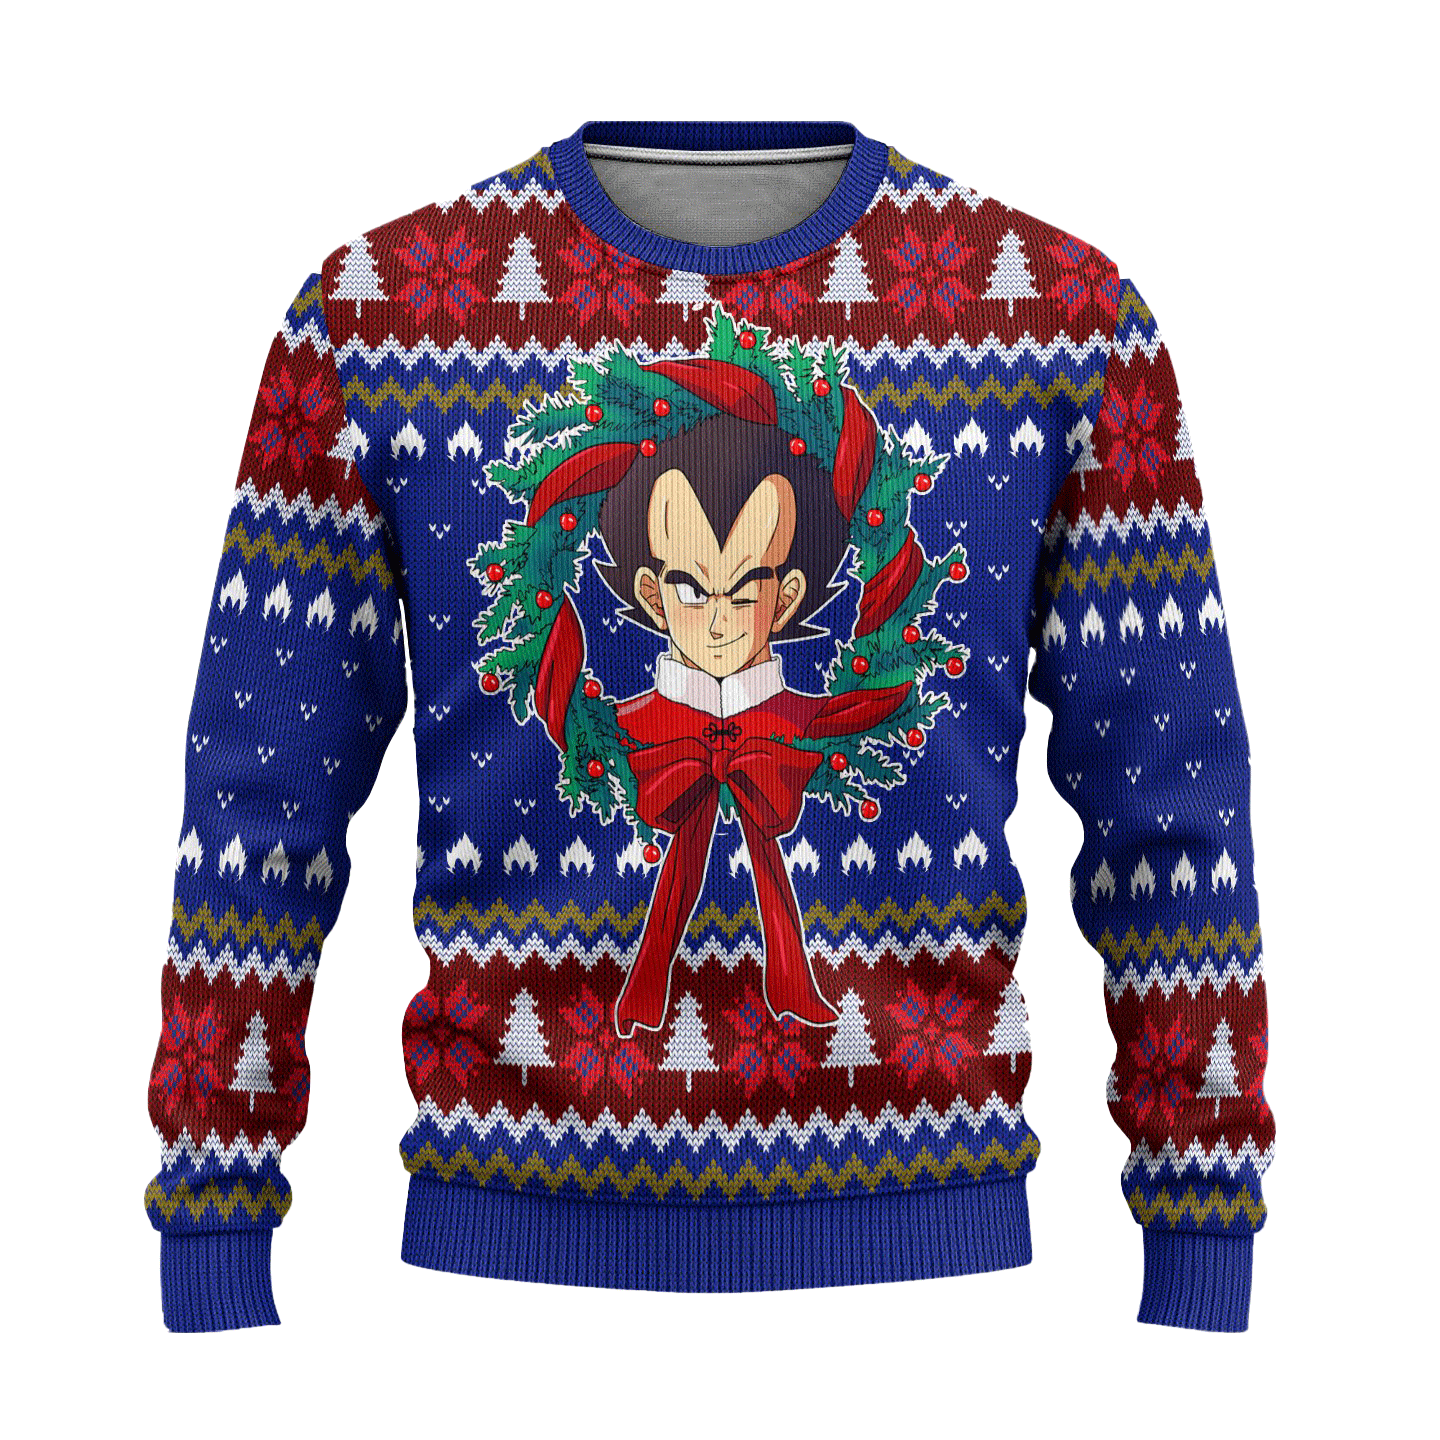 Vegeta Dragon Ball Z Anime Ugly Christmas Sweater Xmas Gift